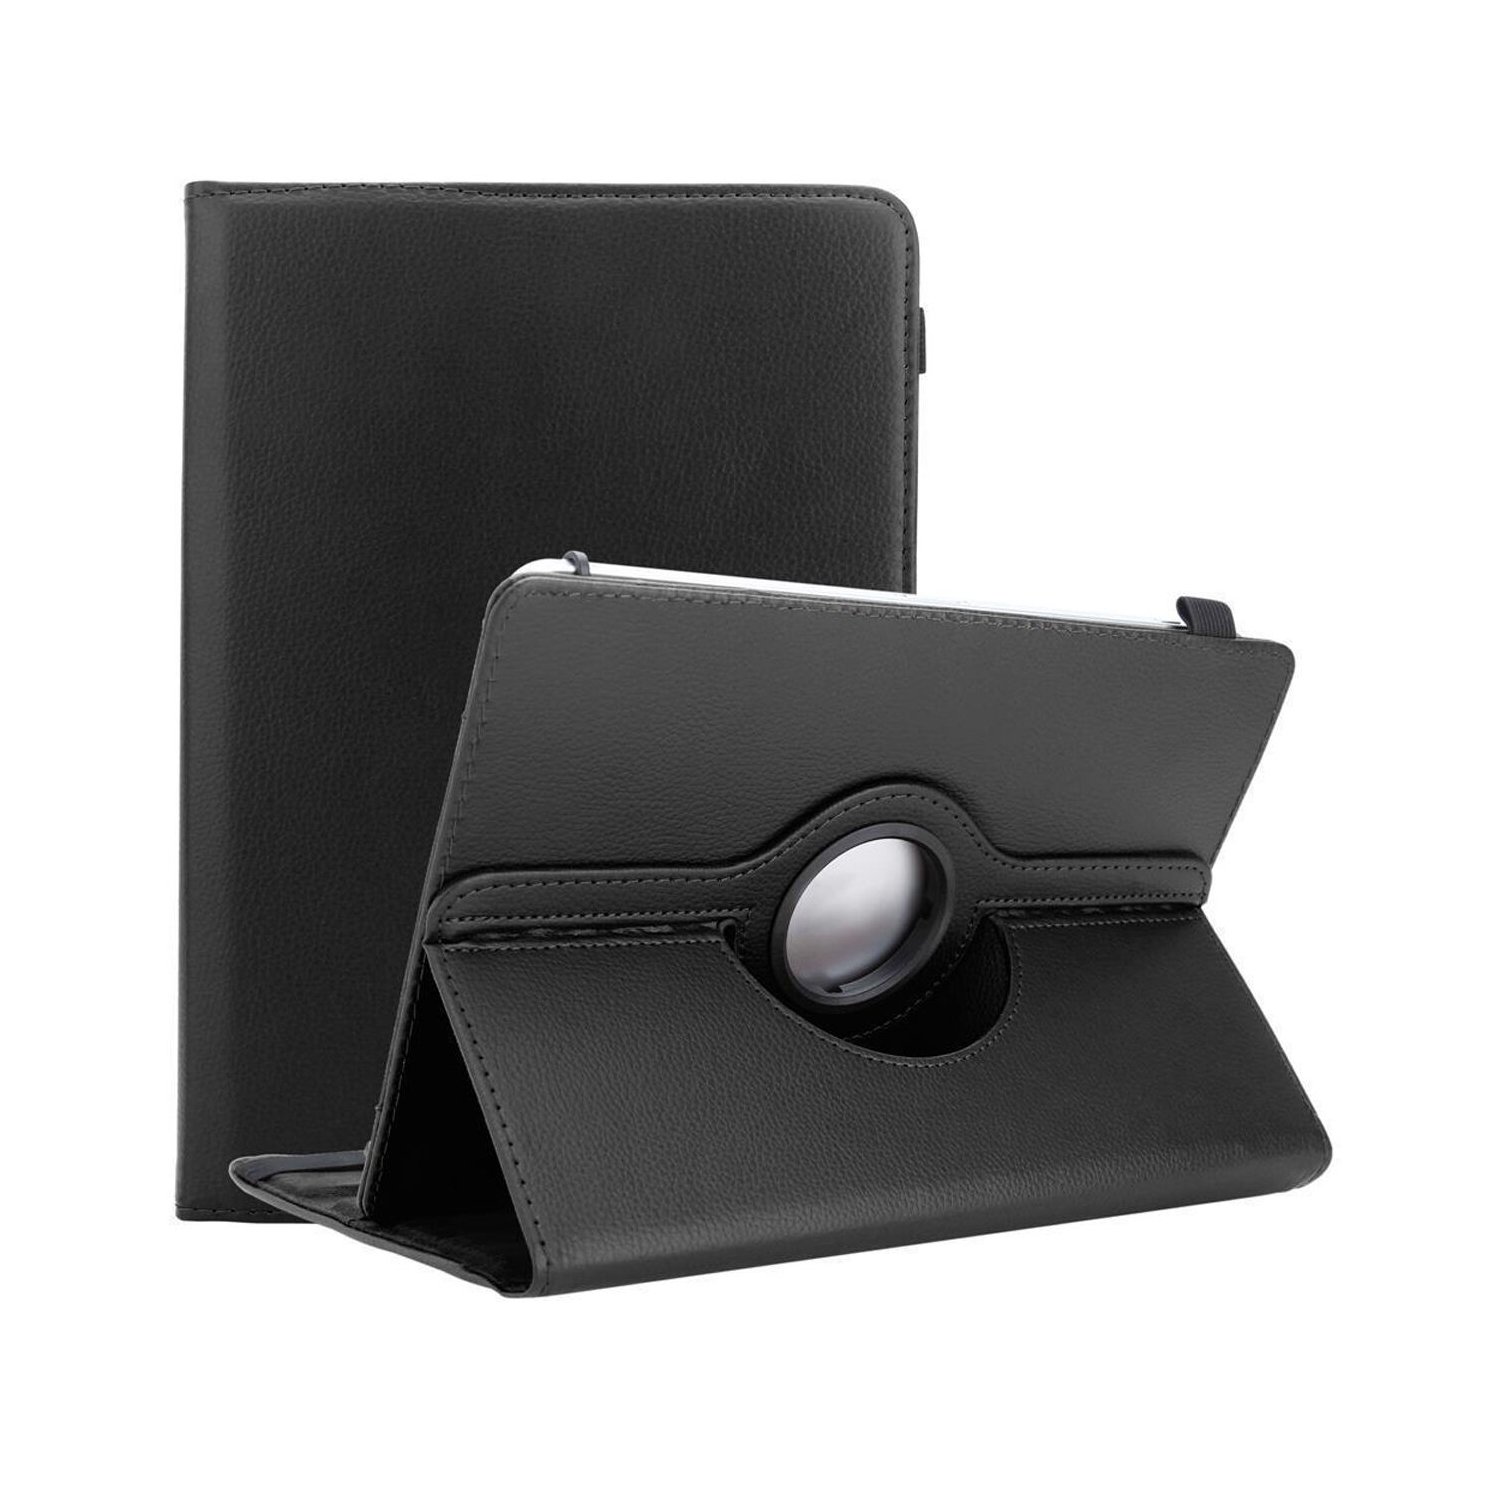 Coque Tablette Pour Lenovo Yoga Tab 3 Plus (10.1 Pouces) En Noir